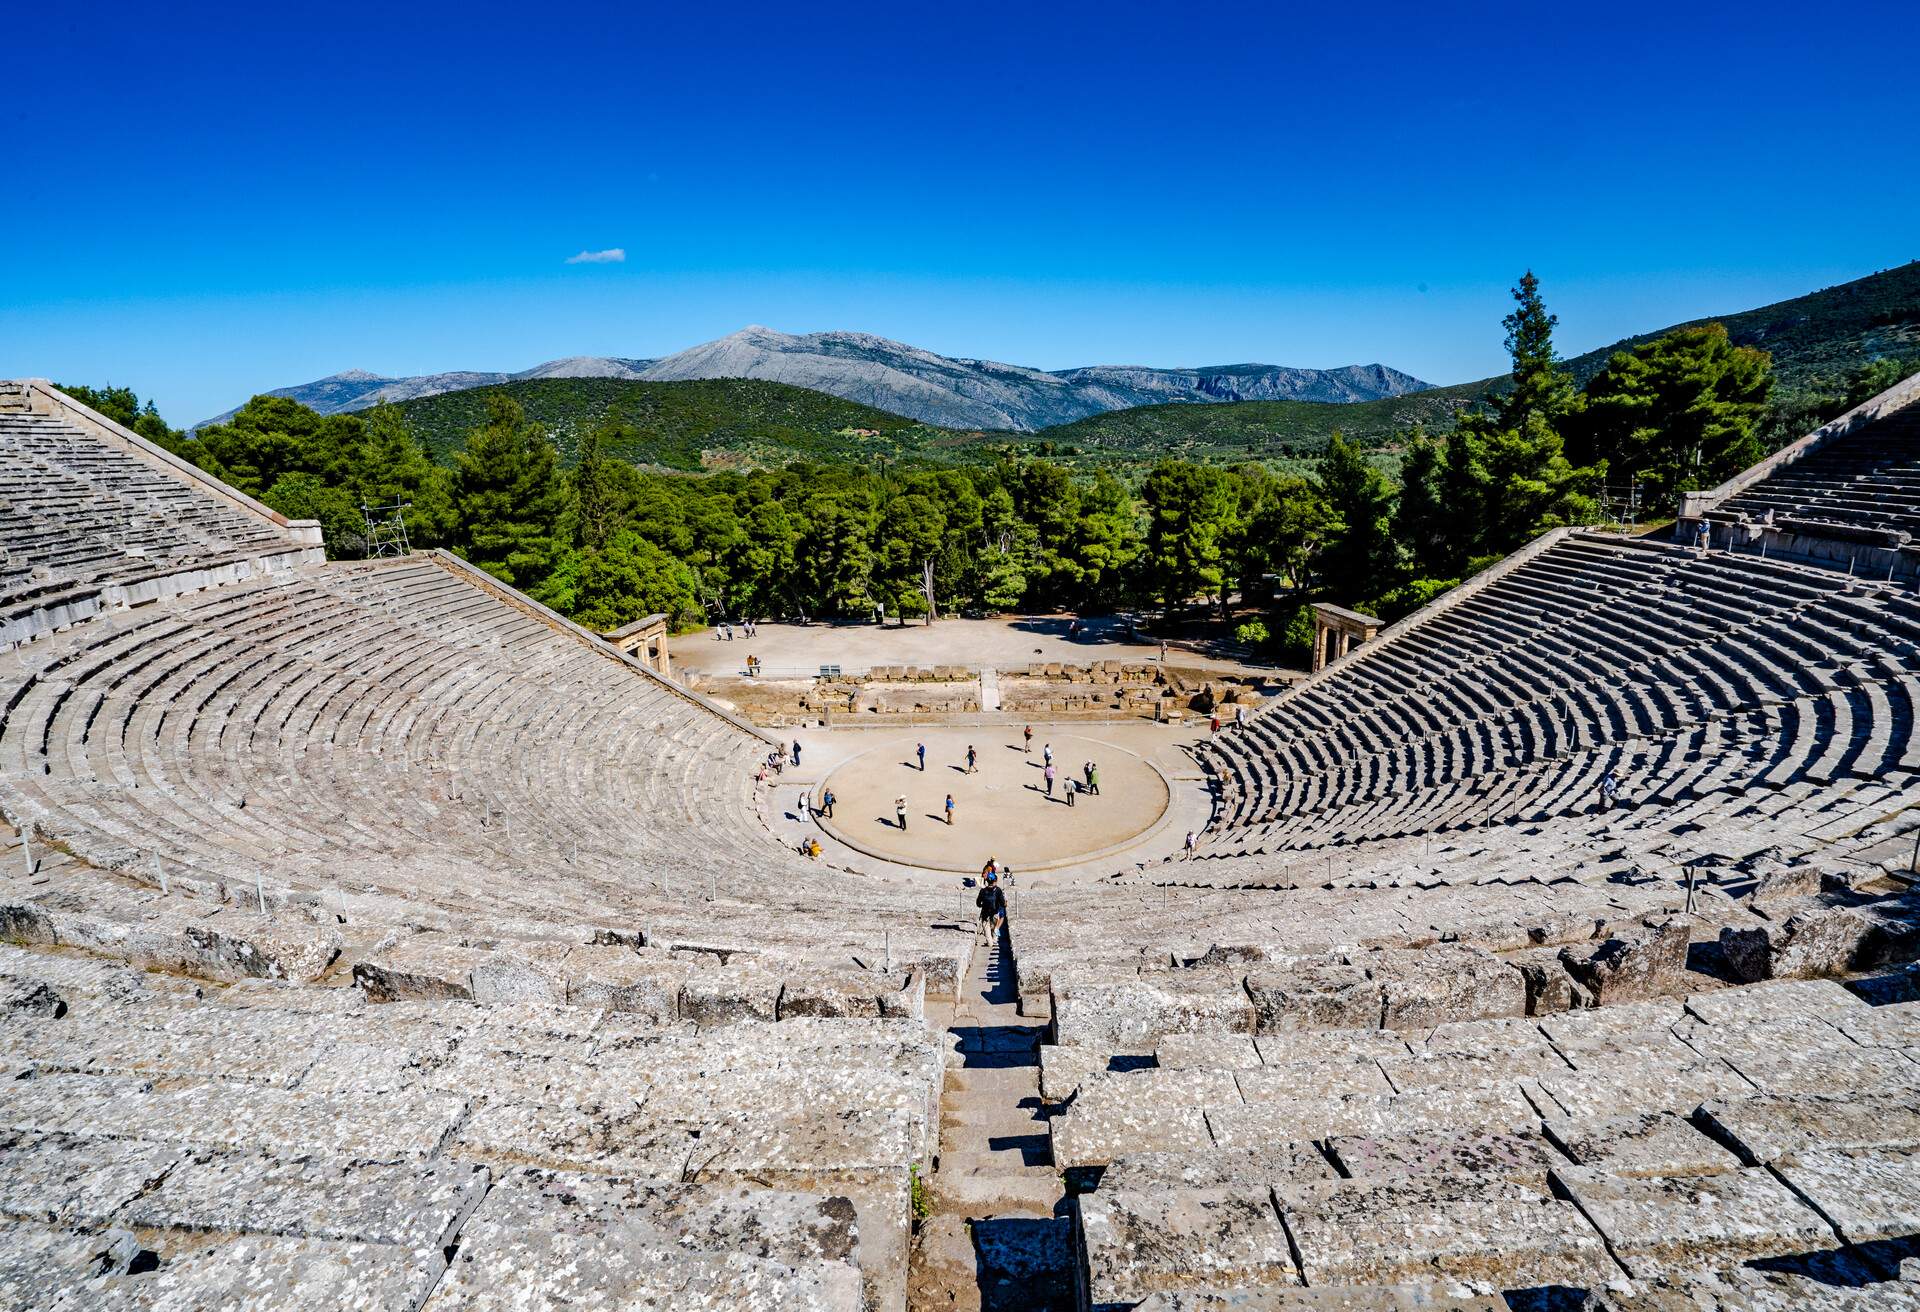 DEST_GREECE_LYGOURIO_Theater-of-Epidaurus_GettyImages-1154481062